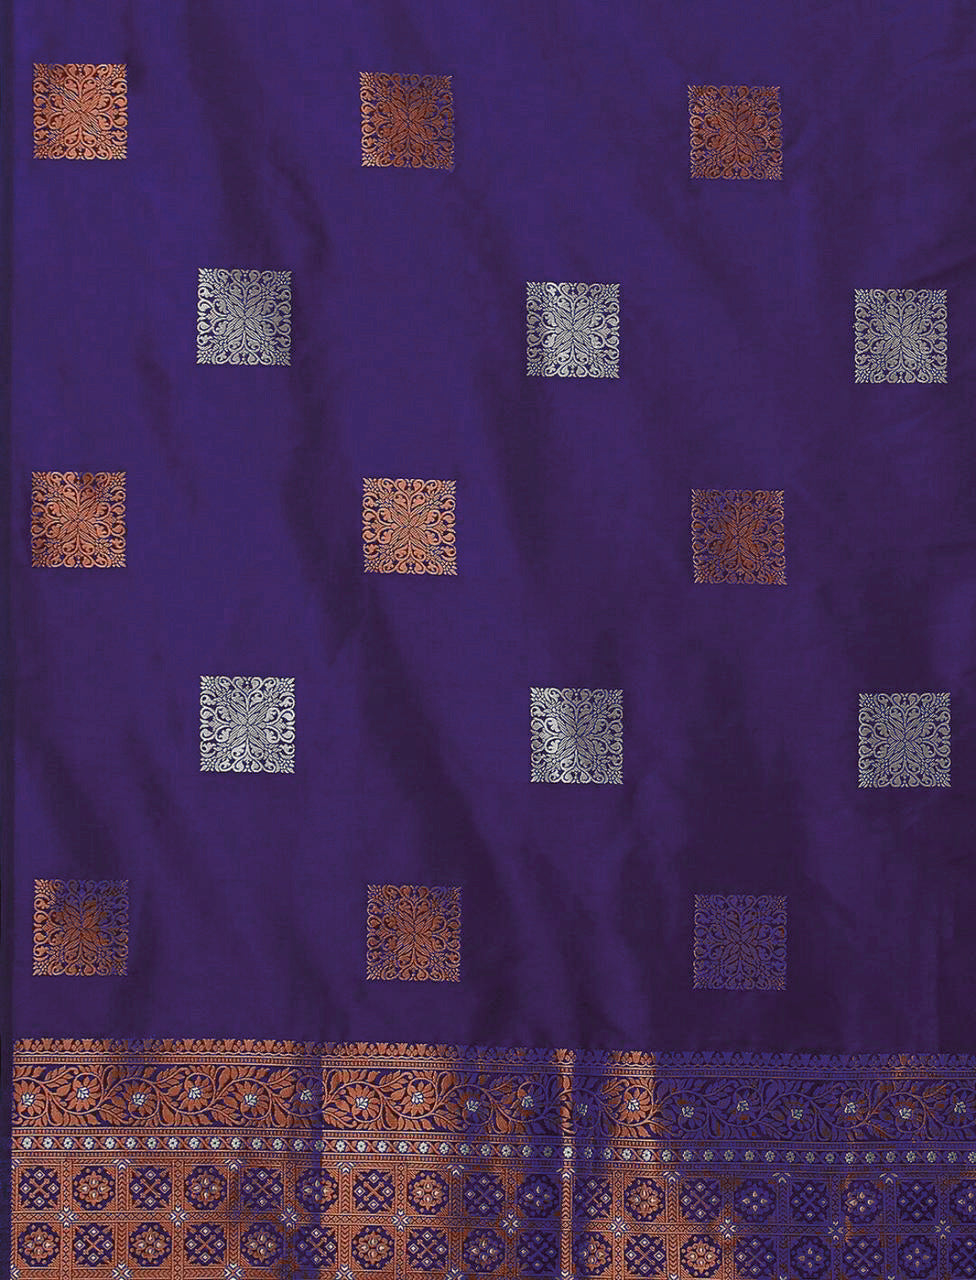 Fairytale Purple Soft Silk Saree With Opulent Blouse Piece - Colorful Saree